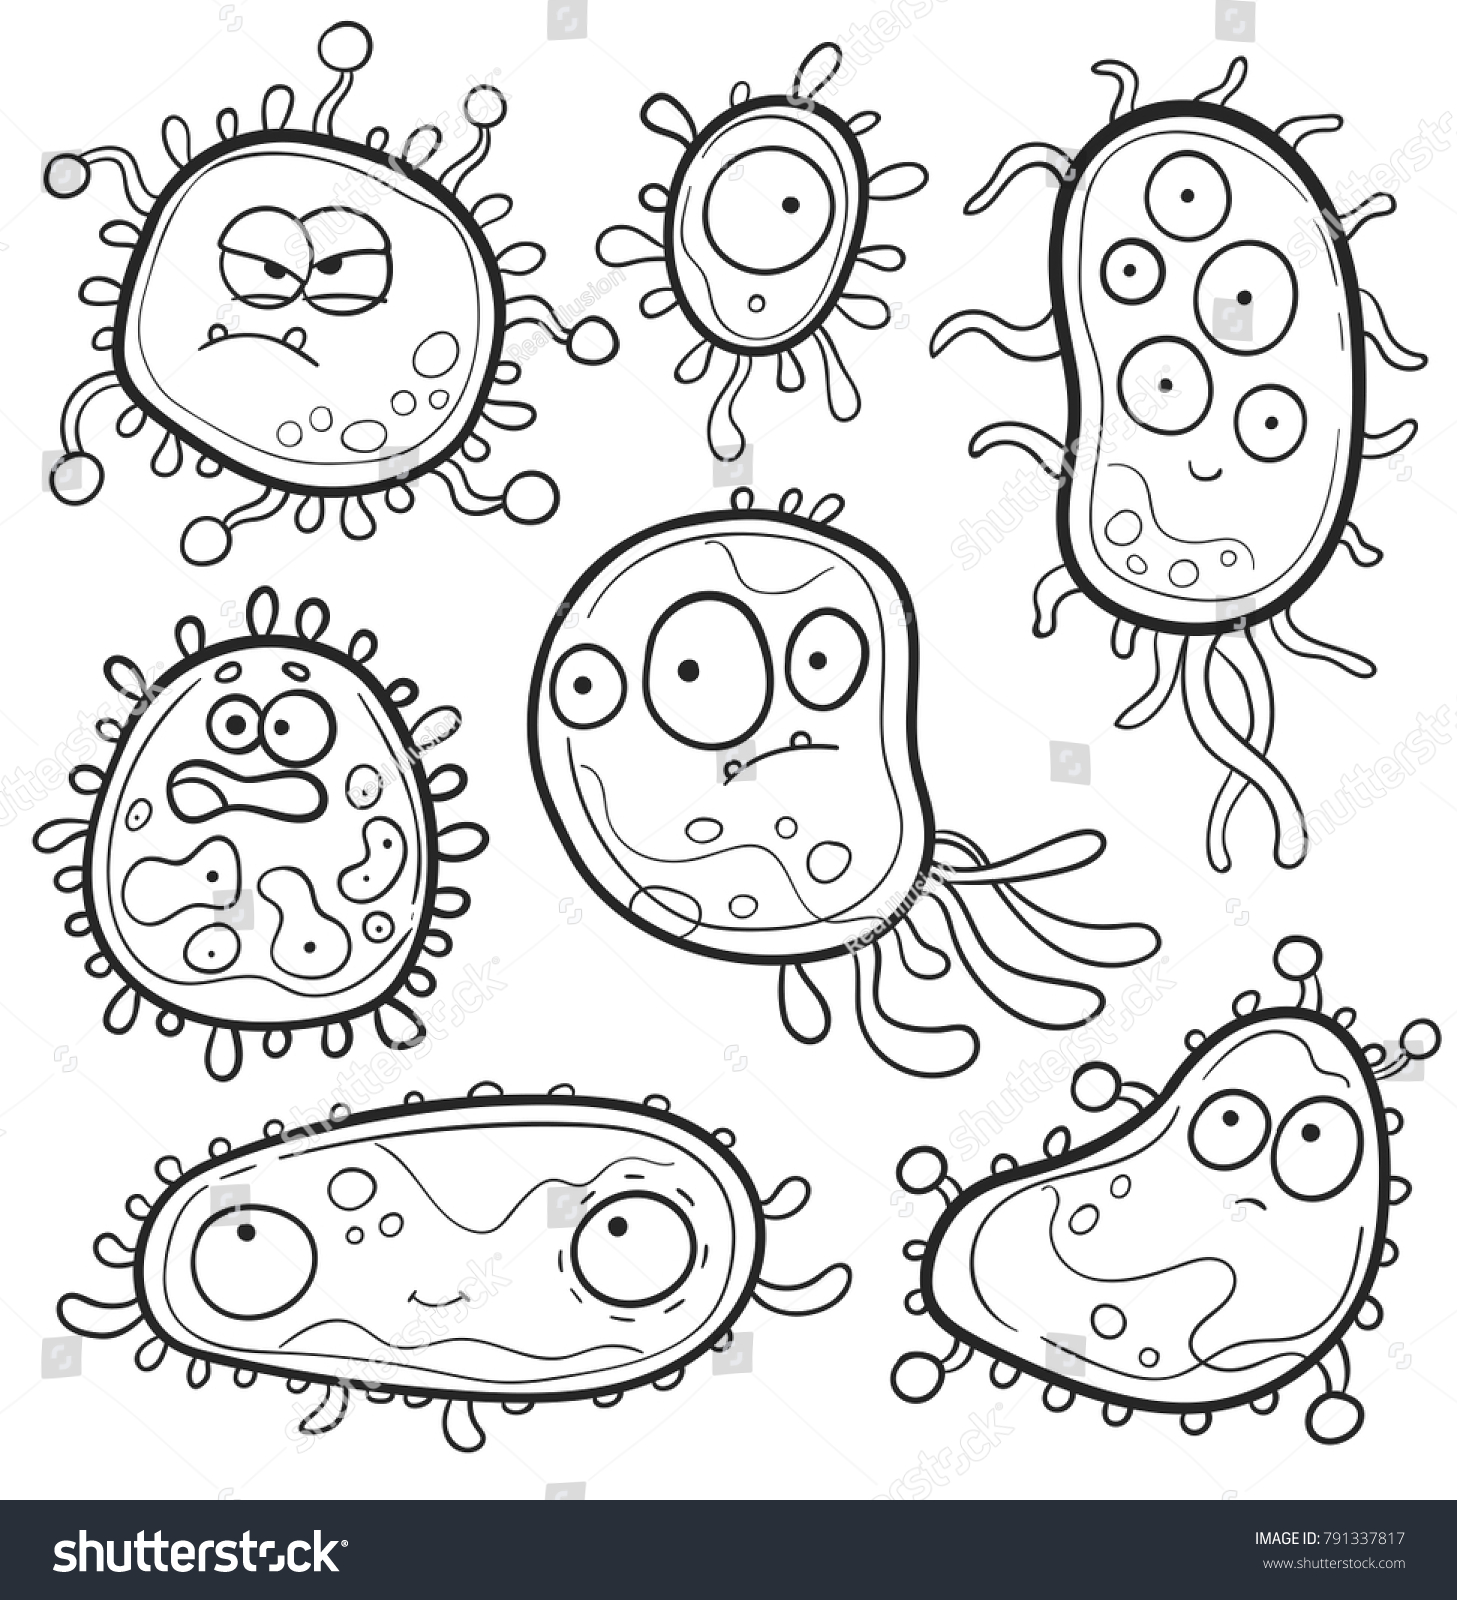 Микробы раскраска